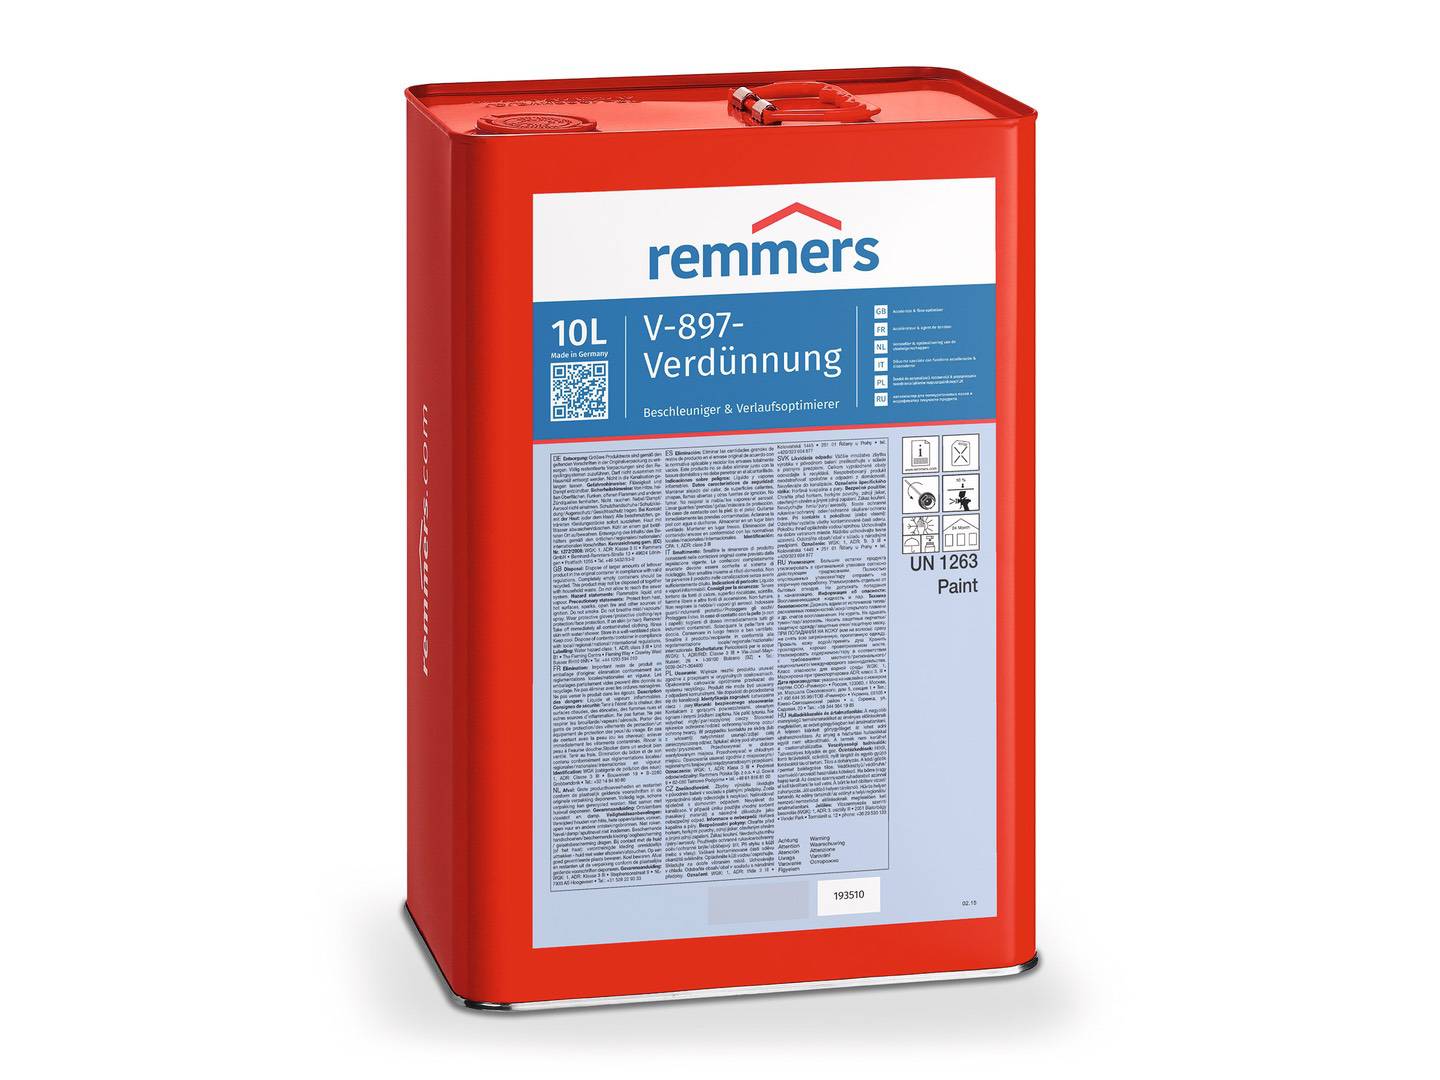 REMMERS V-897-Verdünnung